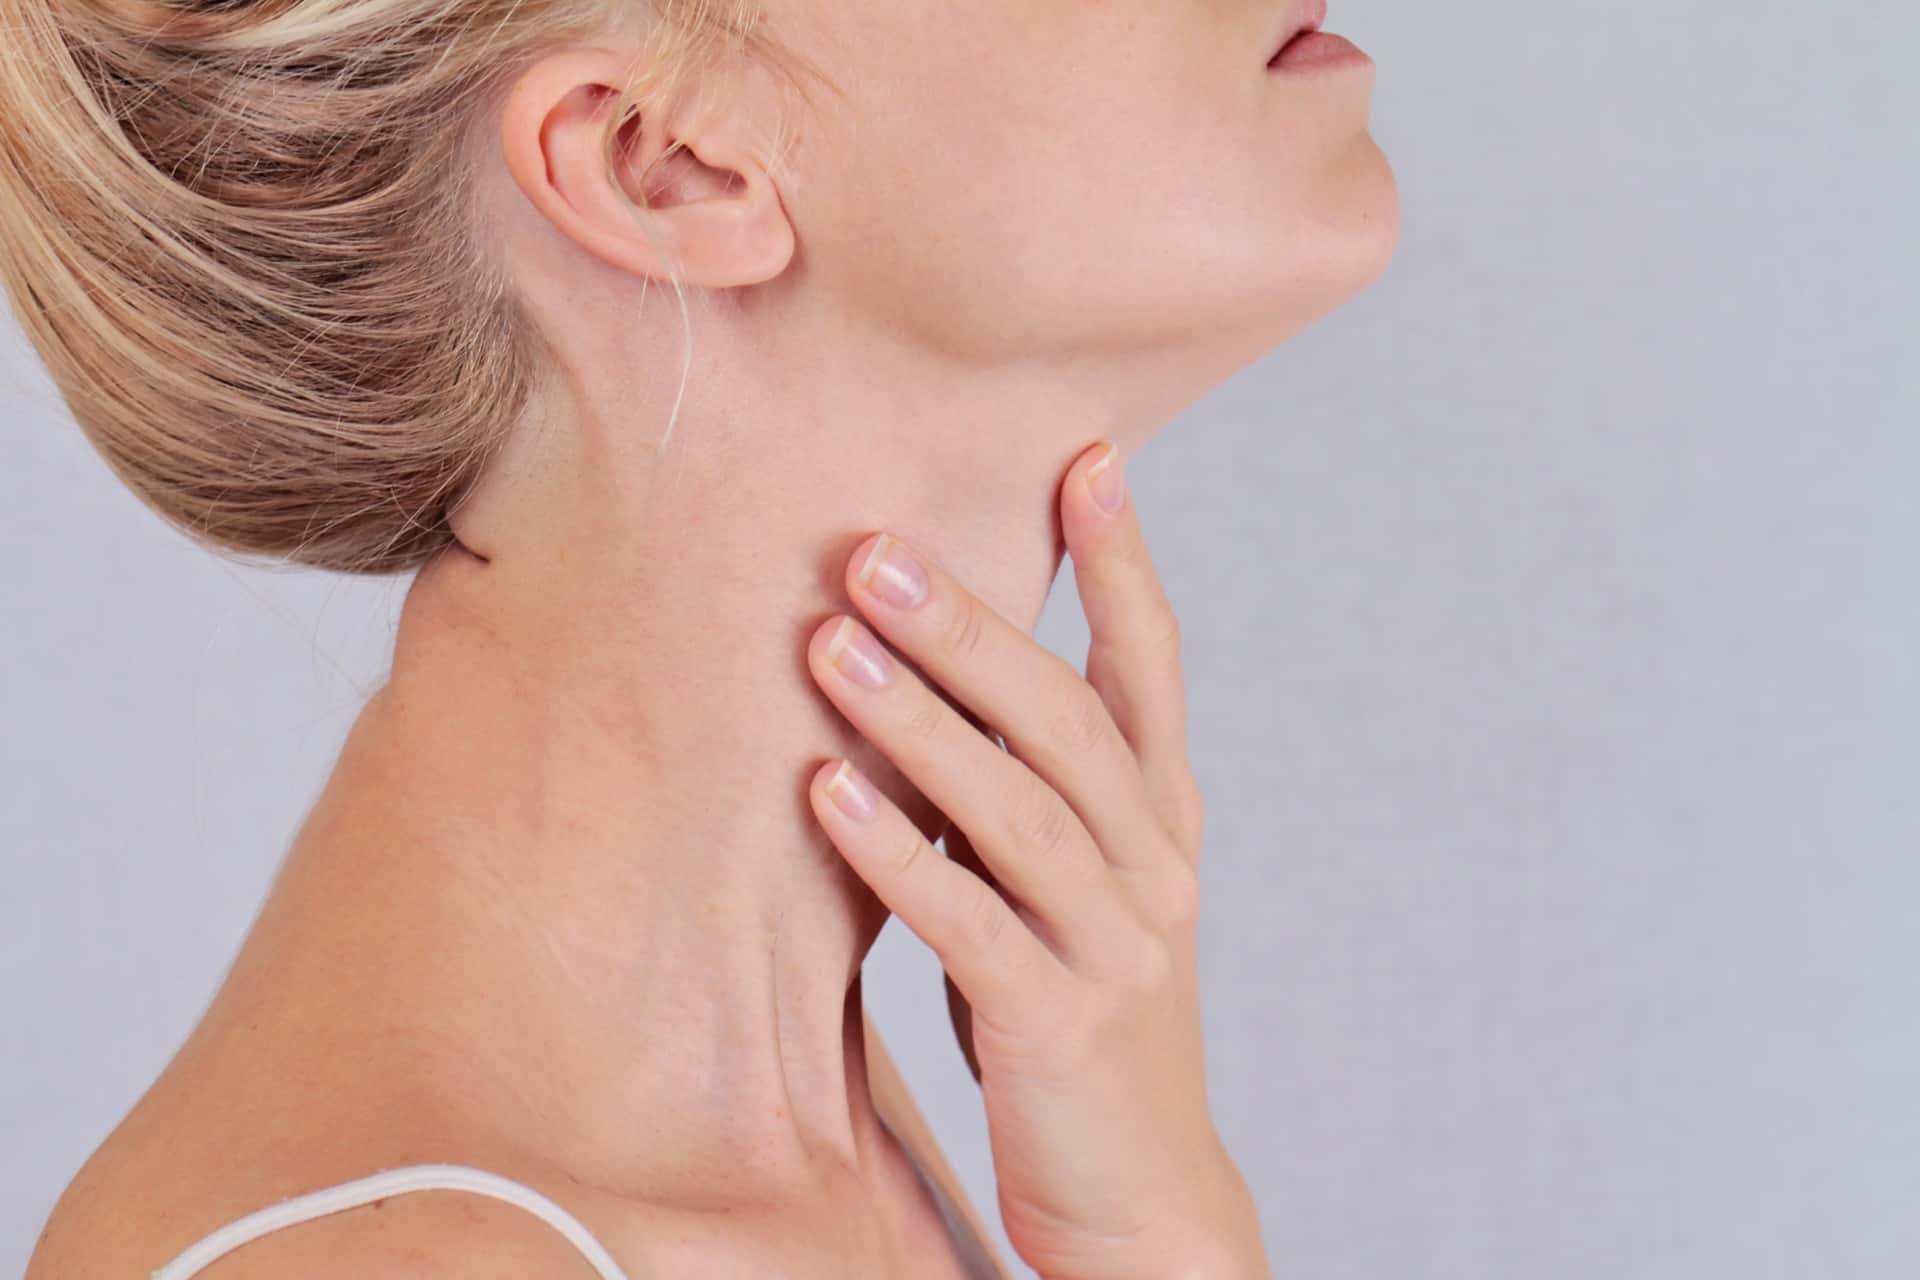 does glutathione help thyroid health?